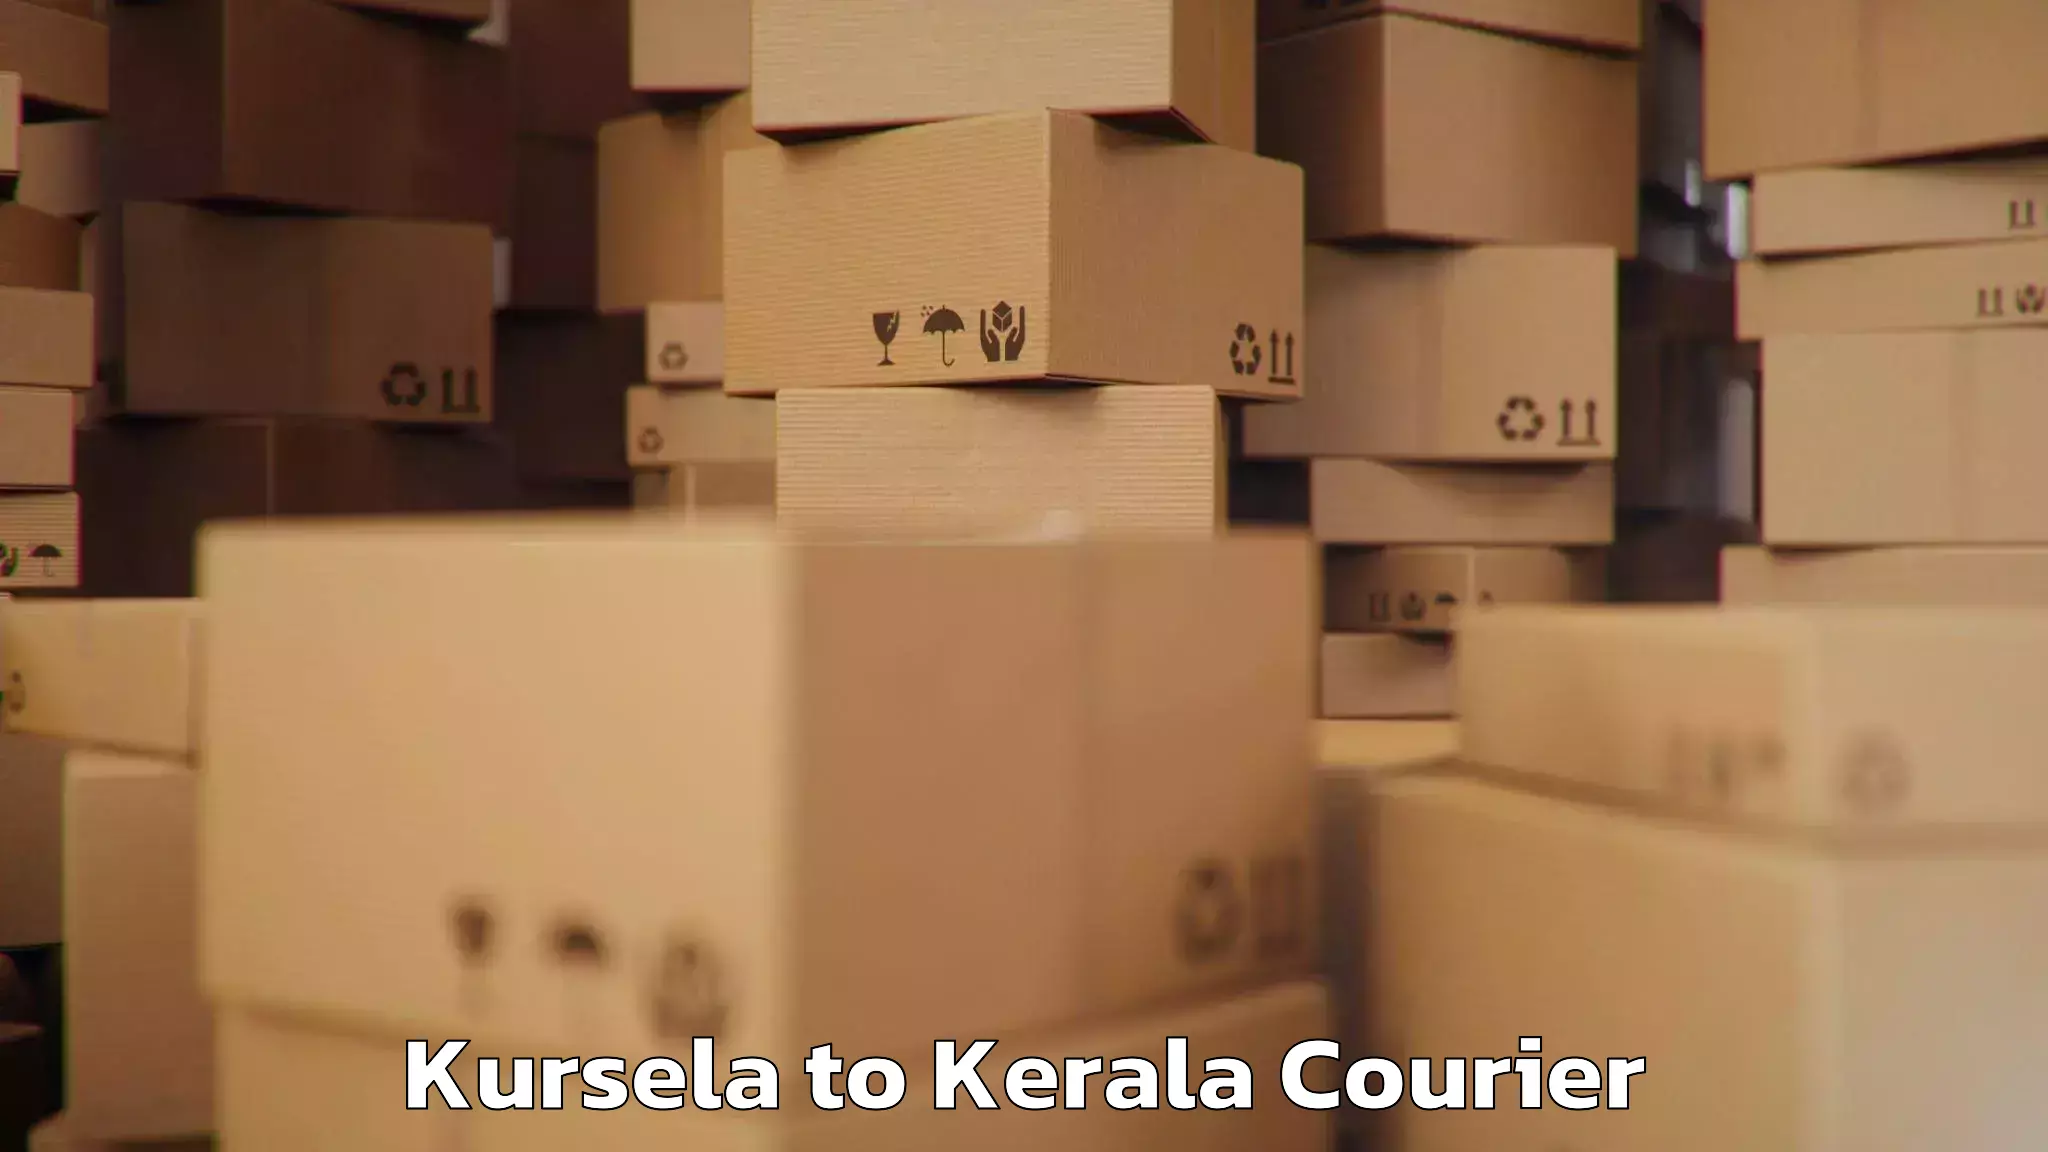 Baggage courier advice Kursela to Kottayam